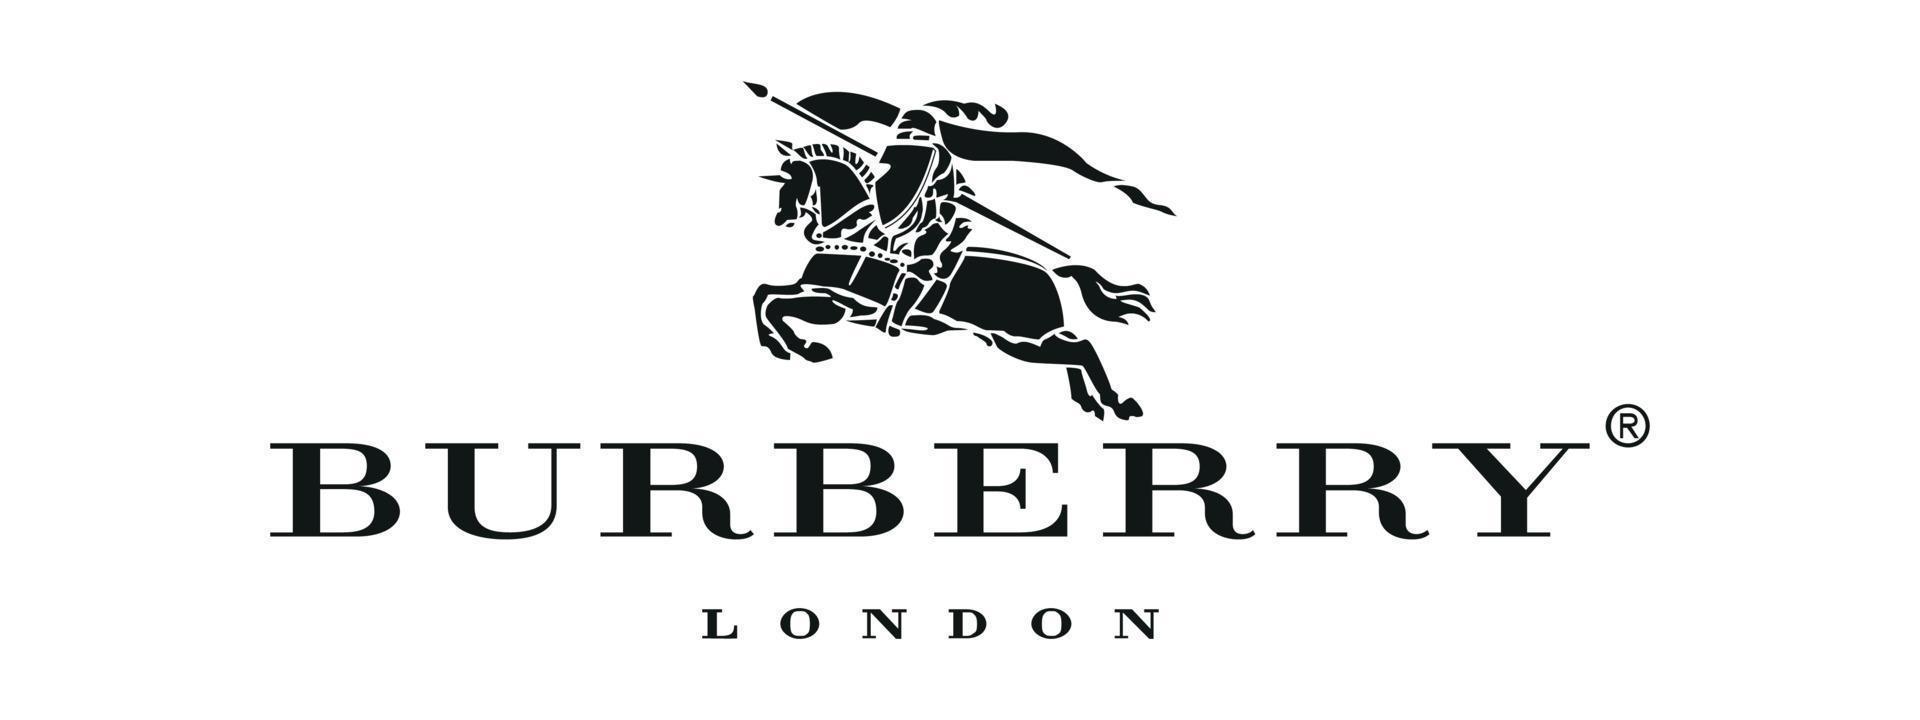 logotipo antigo da burberry em fundo transparente vetor